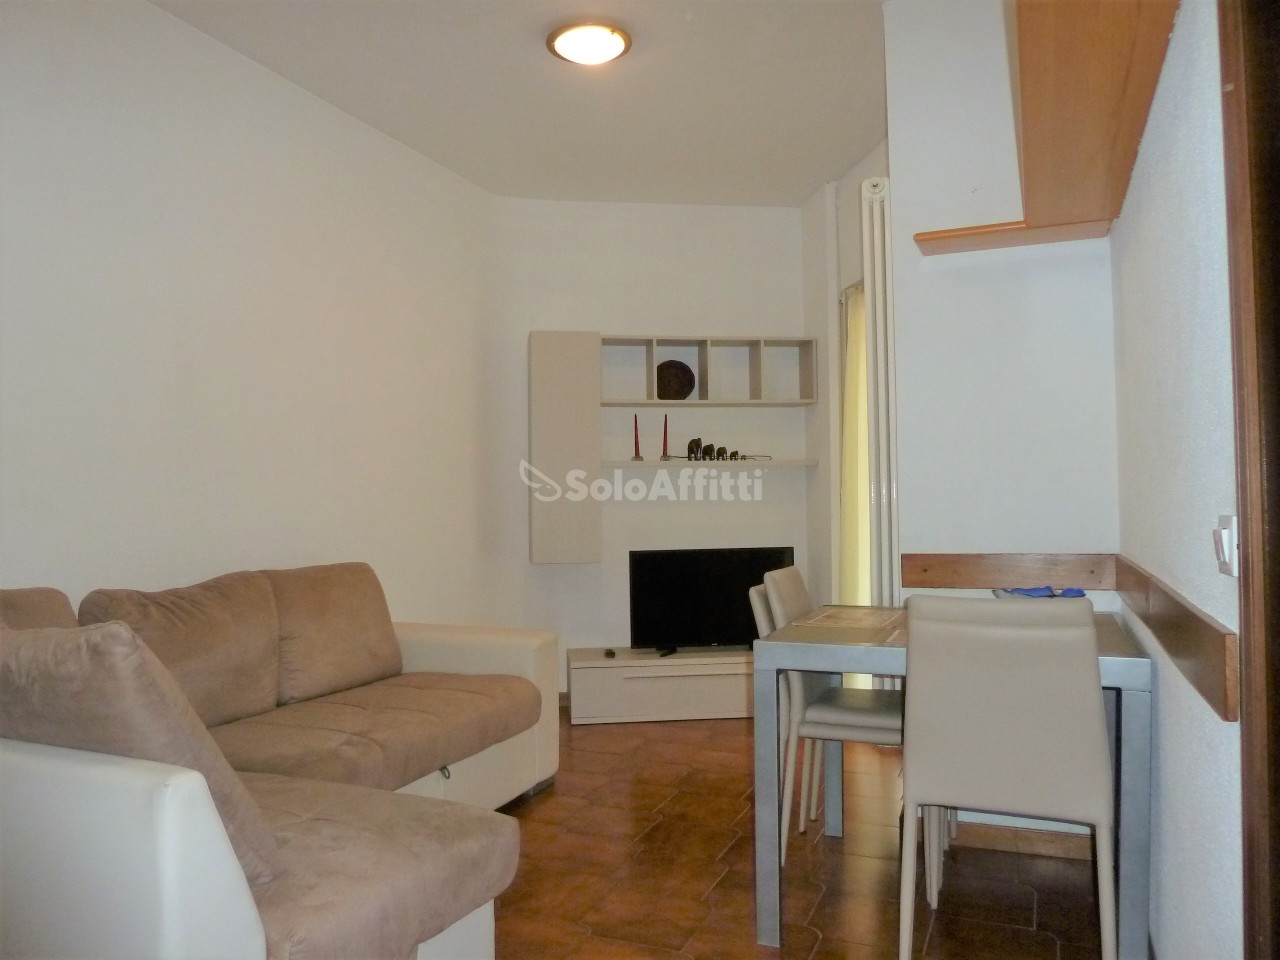 Appartamento in affitto a SanRemo, 3 locali, prezzo € 550 | PortaleAgenzieImmobiliari.it